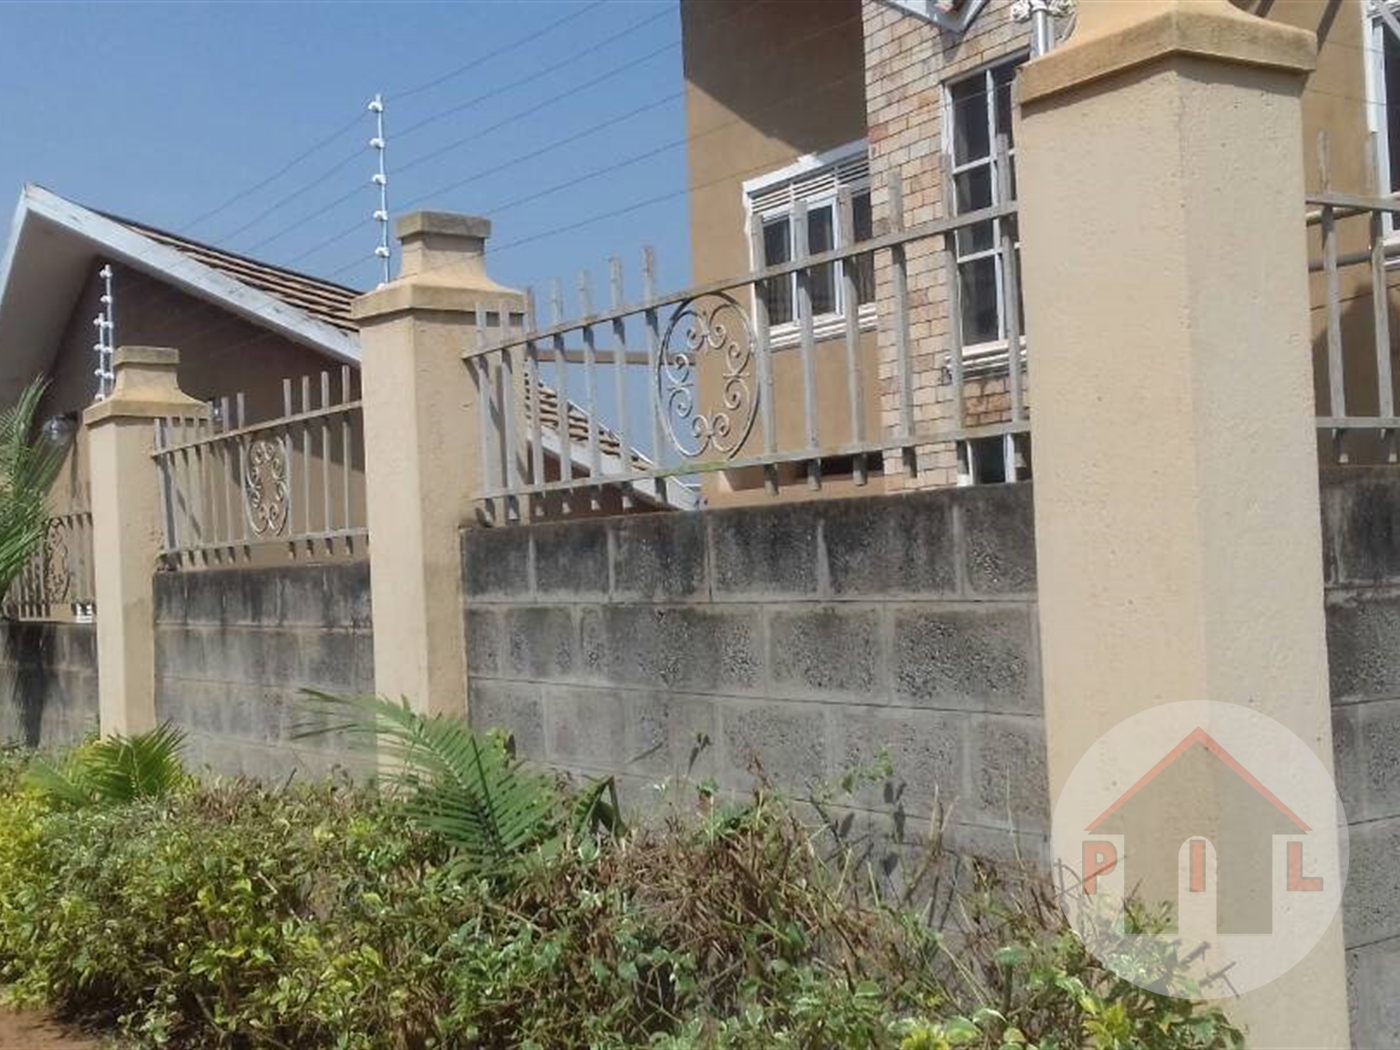 Mansion for sale in Munyonyo Kampala